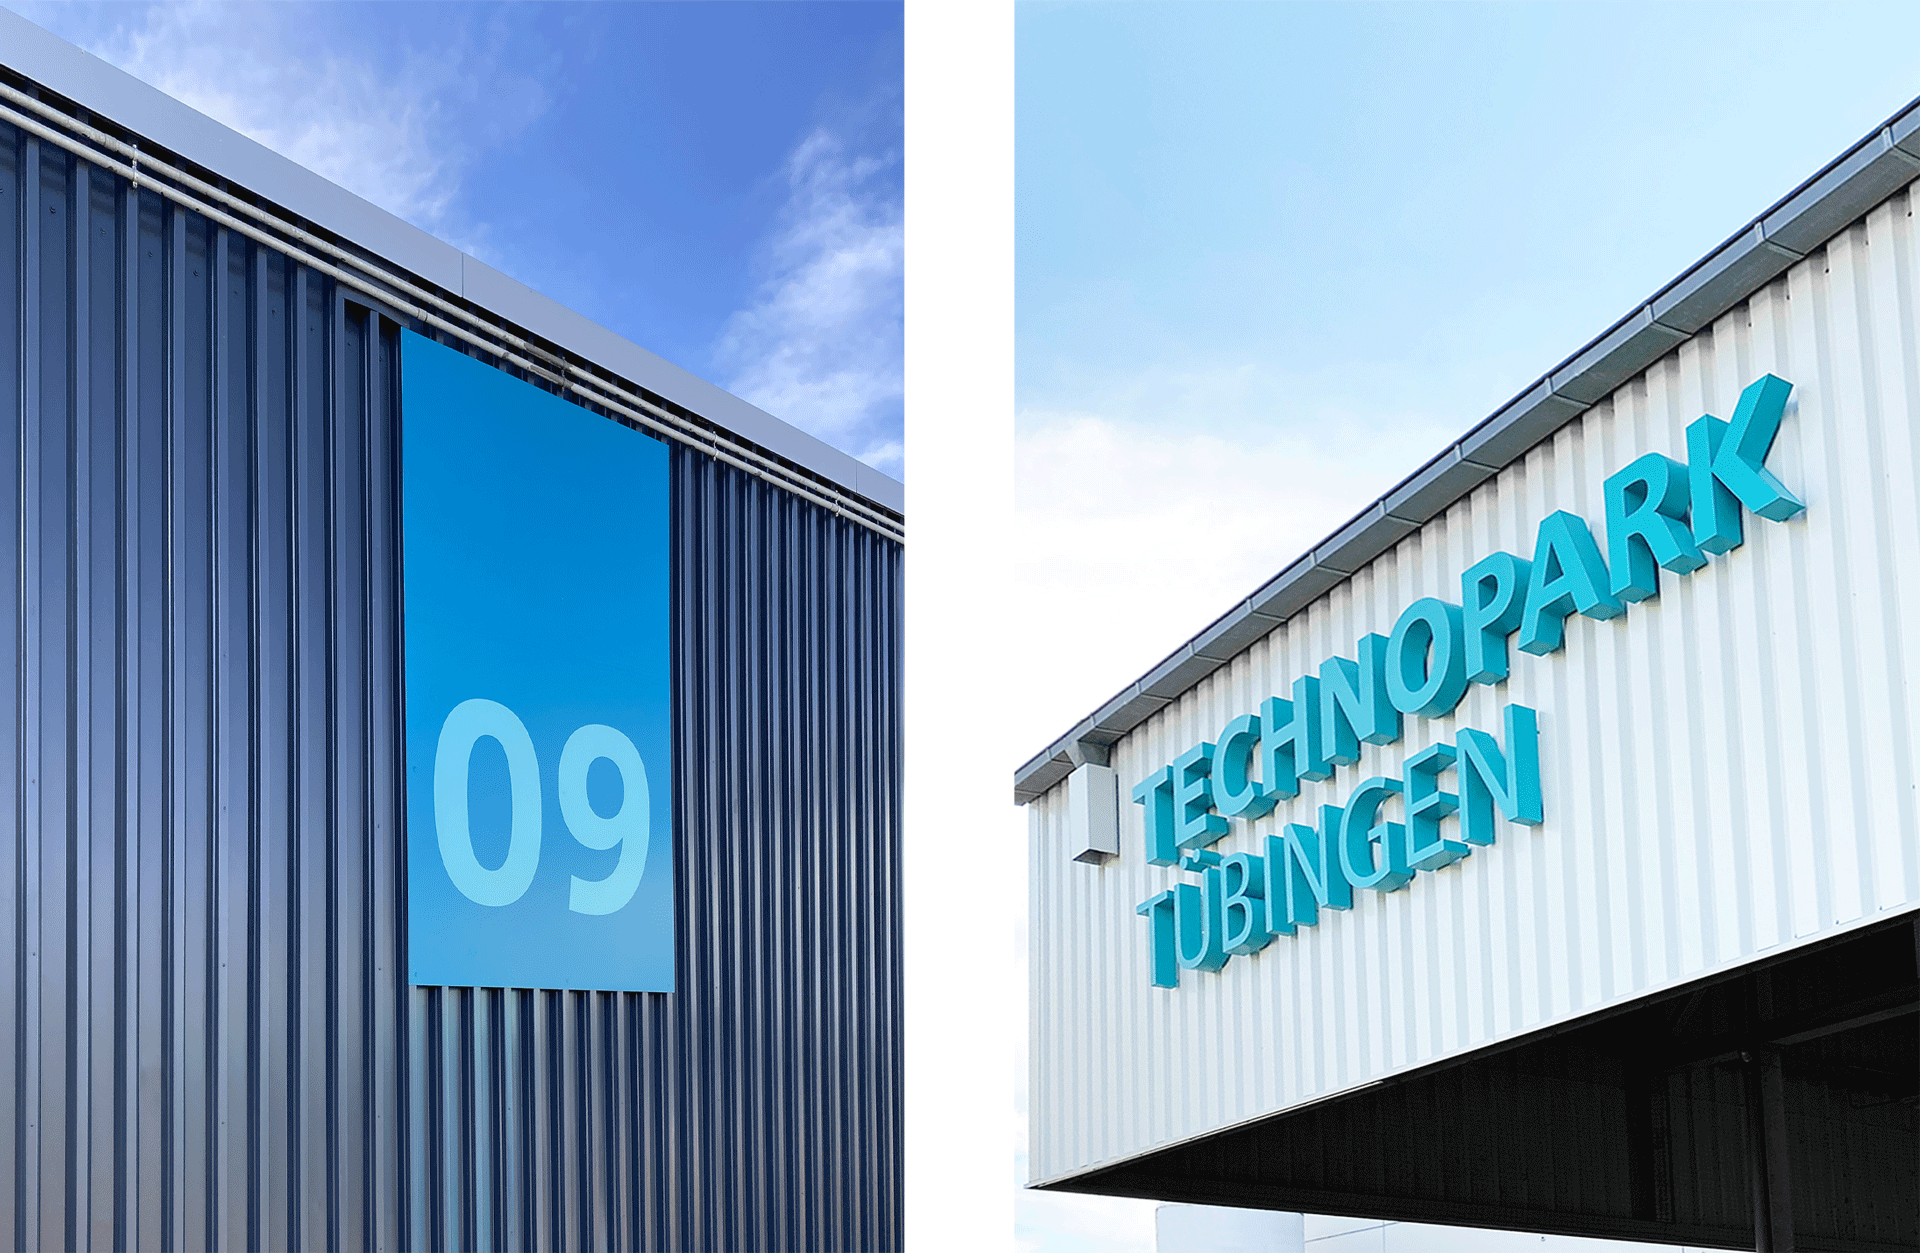 Links ein Gebäudebranding des Technoparks in Tübingen mit der Nummerierung 09 in blau. Rechts das Gebäudebranding mit dem Schriftzug "Technopark Tübingen" in türkis auf weißem Hintergrund.